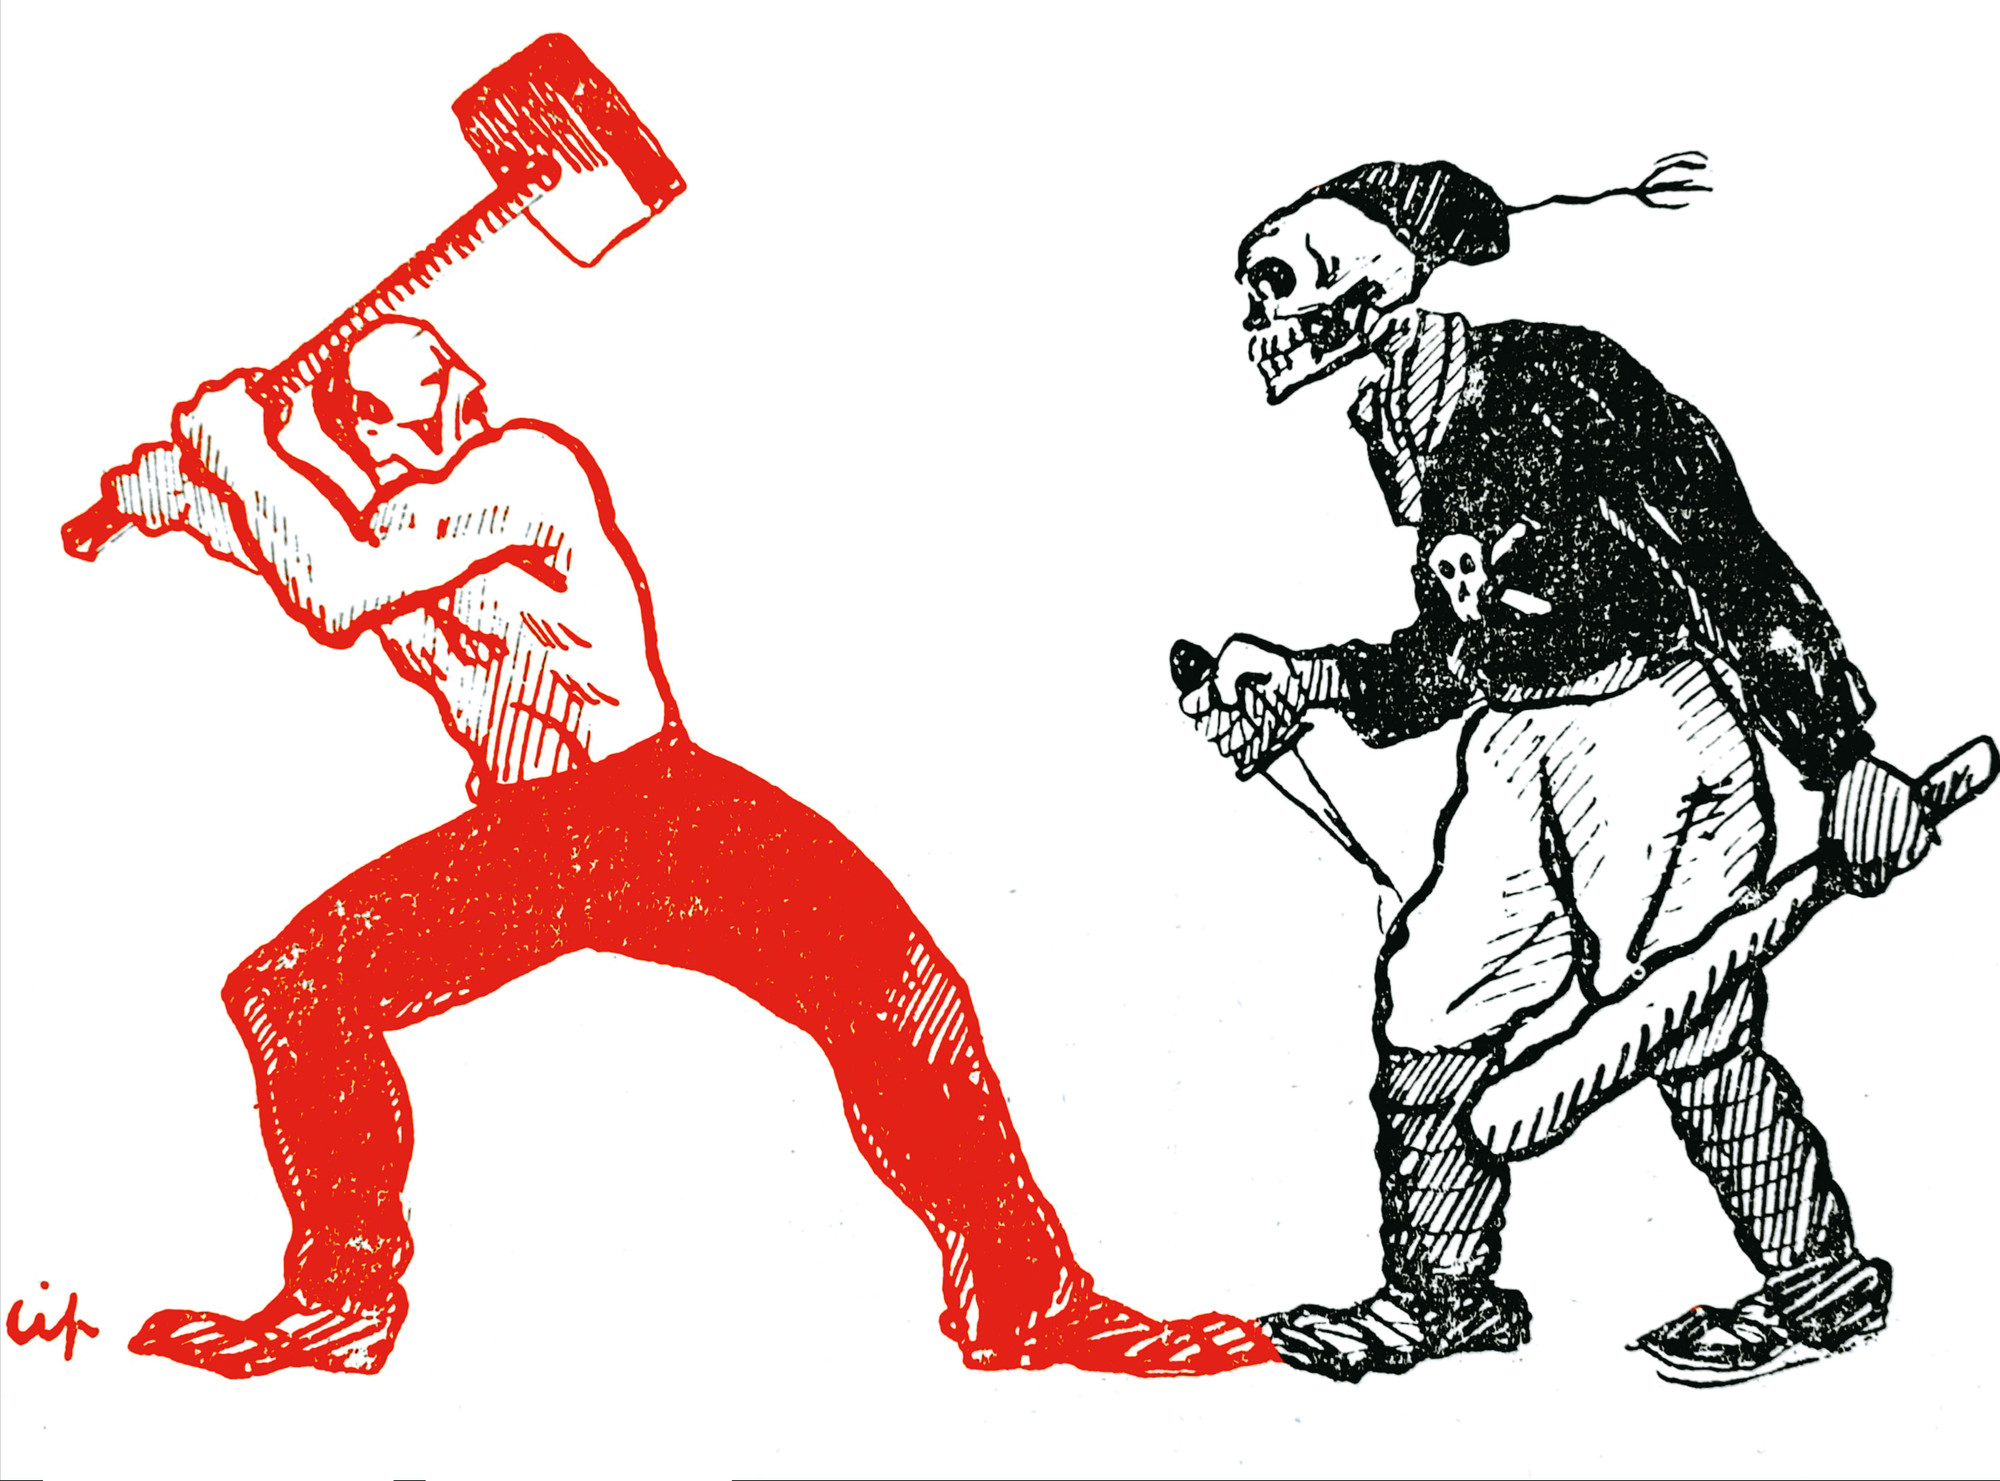 Illustrasjon som viser en arbeider i rødt som kjemper med slegge mot en svartkledd figur med dødningehode.